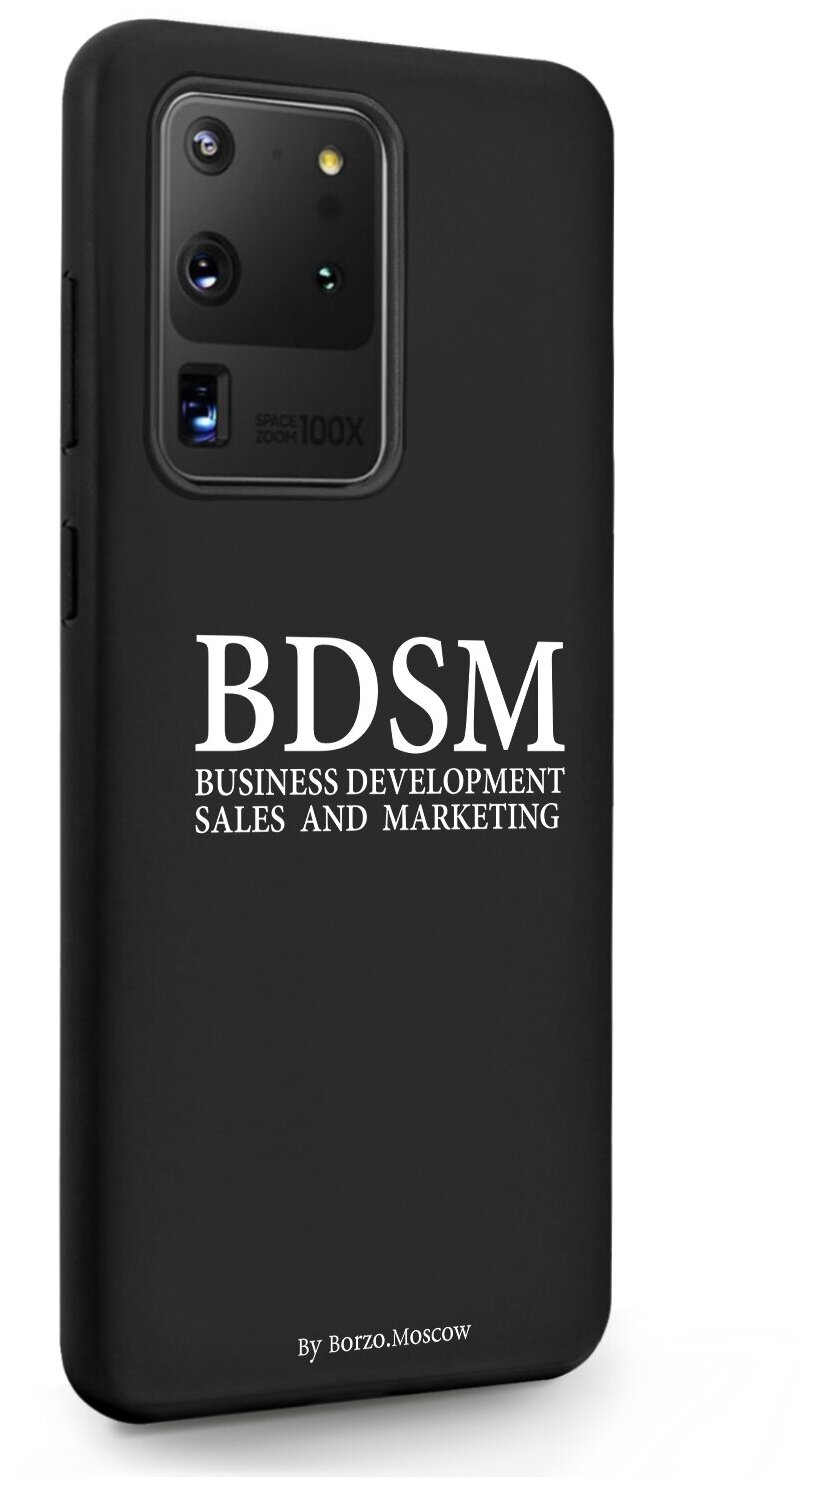 Черный силиконовый чехол Borzo.Moscow для Samsung Galaxy S20 Ultra BDSM (business development sales and marketing) для Самсунг Галакси C20 Ультра